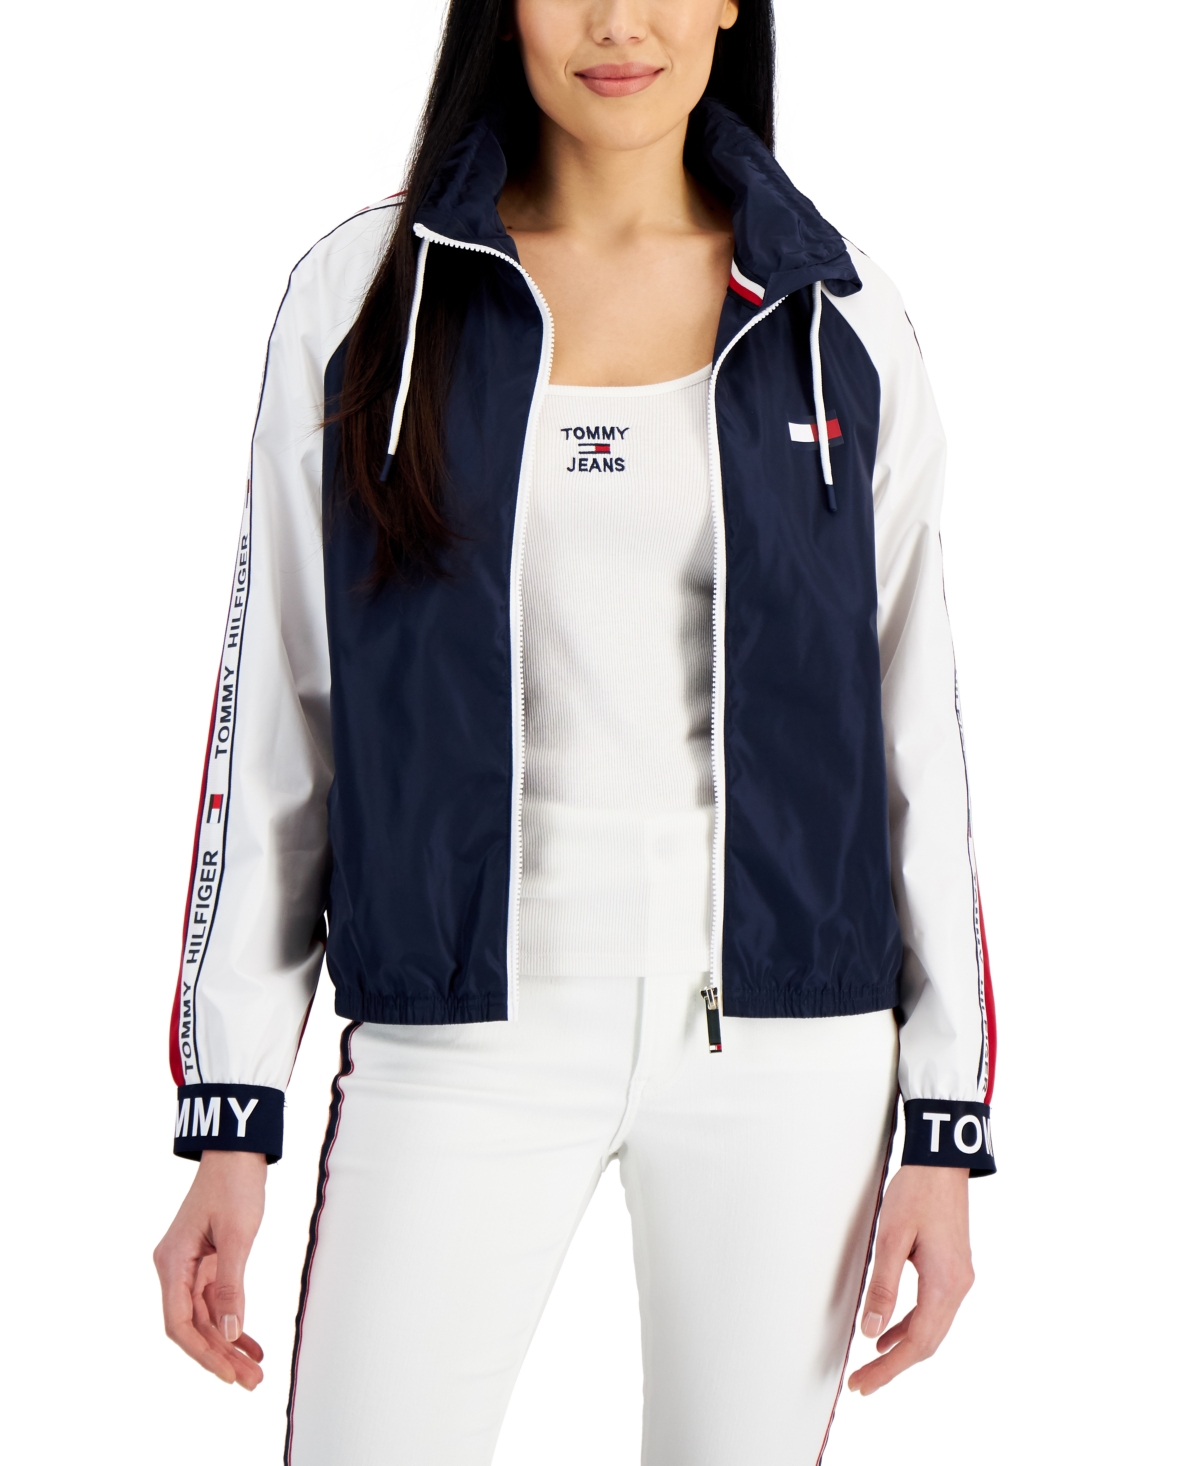 Tommy Hilfiger Women's Colorblocked Windbreaker Jacket